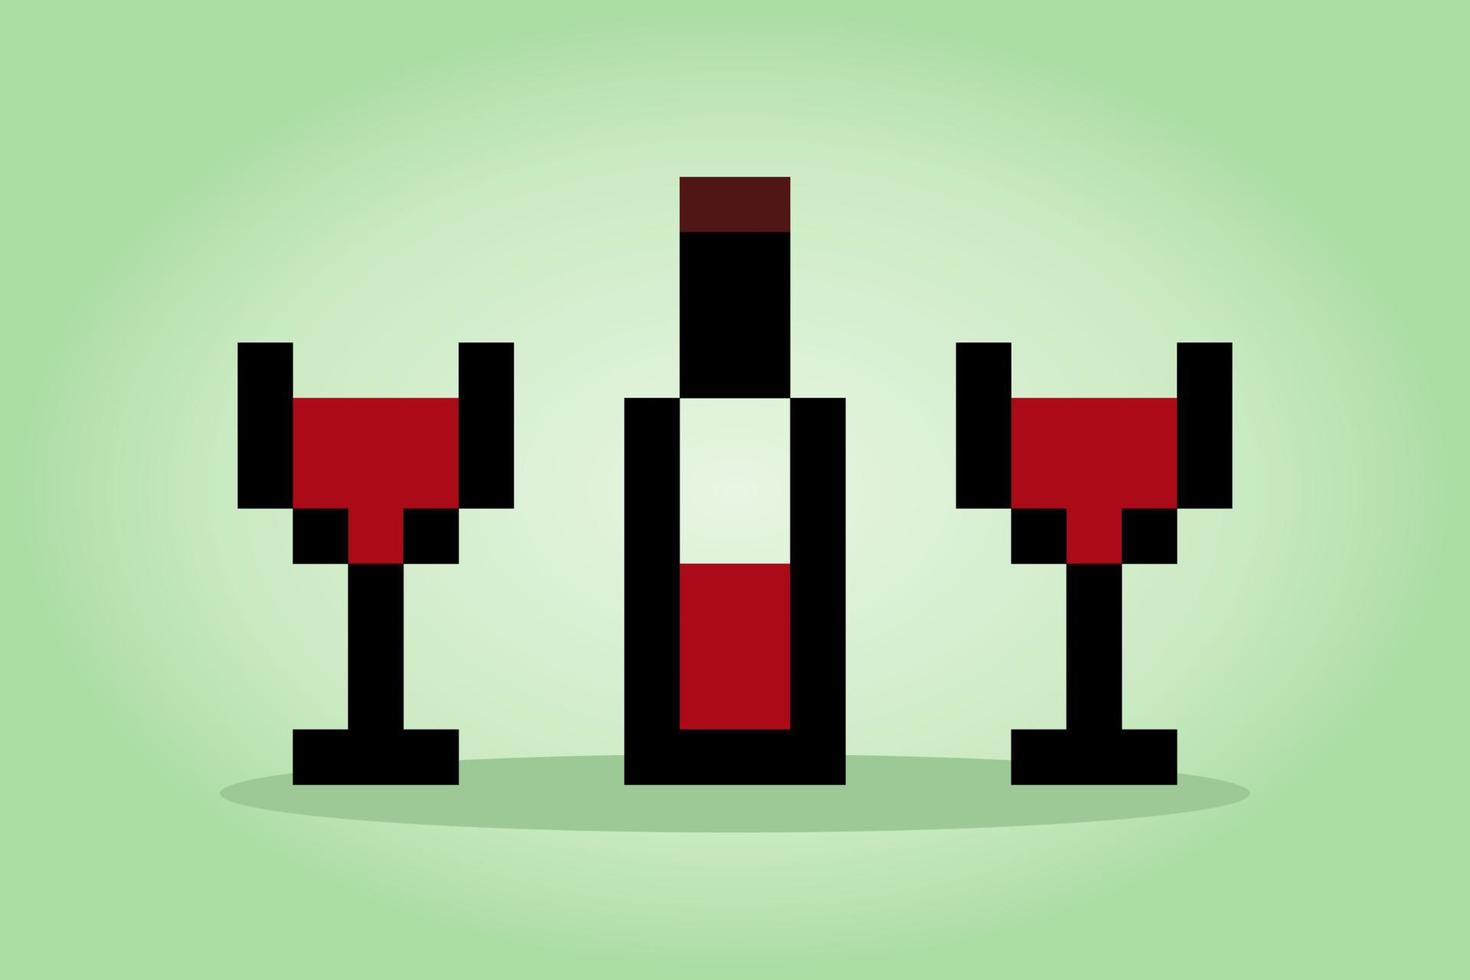 8 bit pixel di vino. bere pixel nelle illustrazioni vettoriali per risorse di gioco o schemi a punto croce